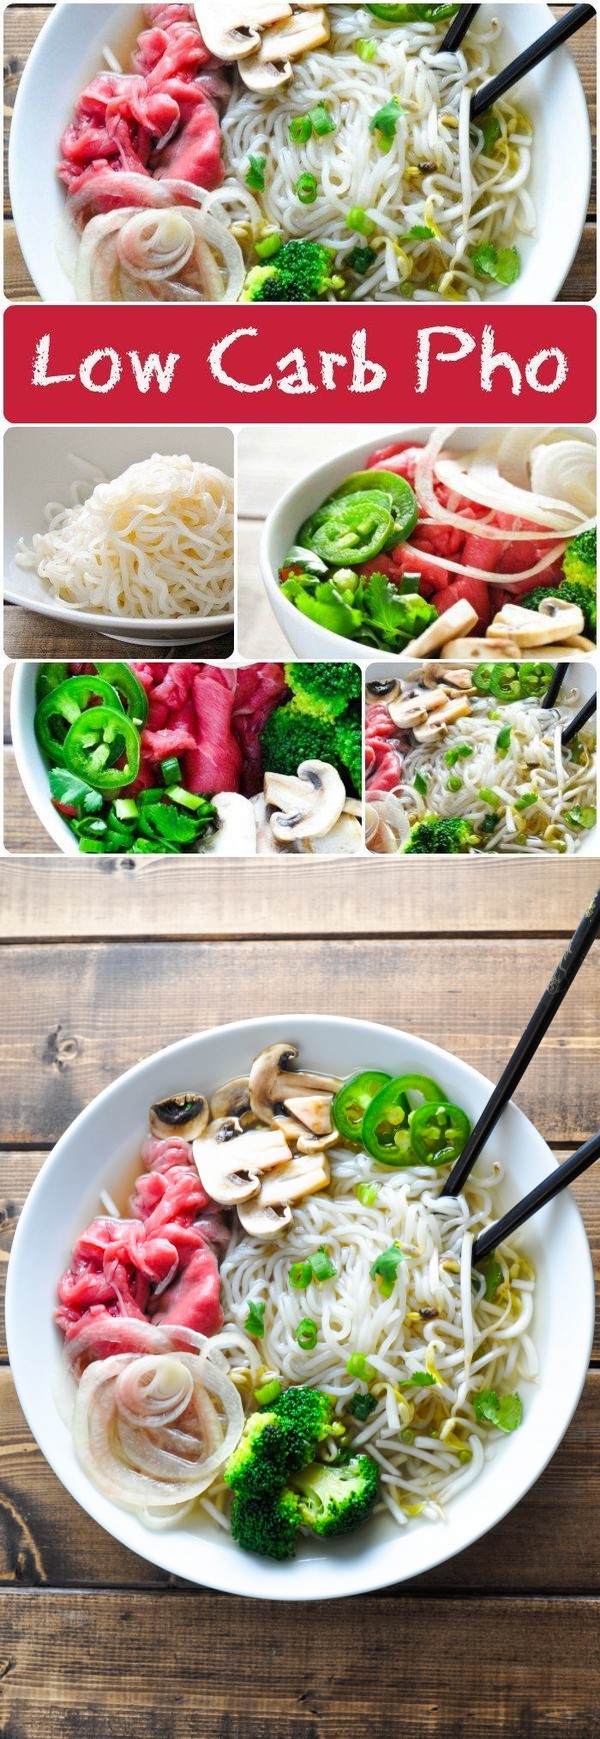 Low Carb Pho – Vietnamese Beef Noodle Soup